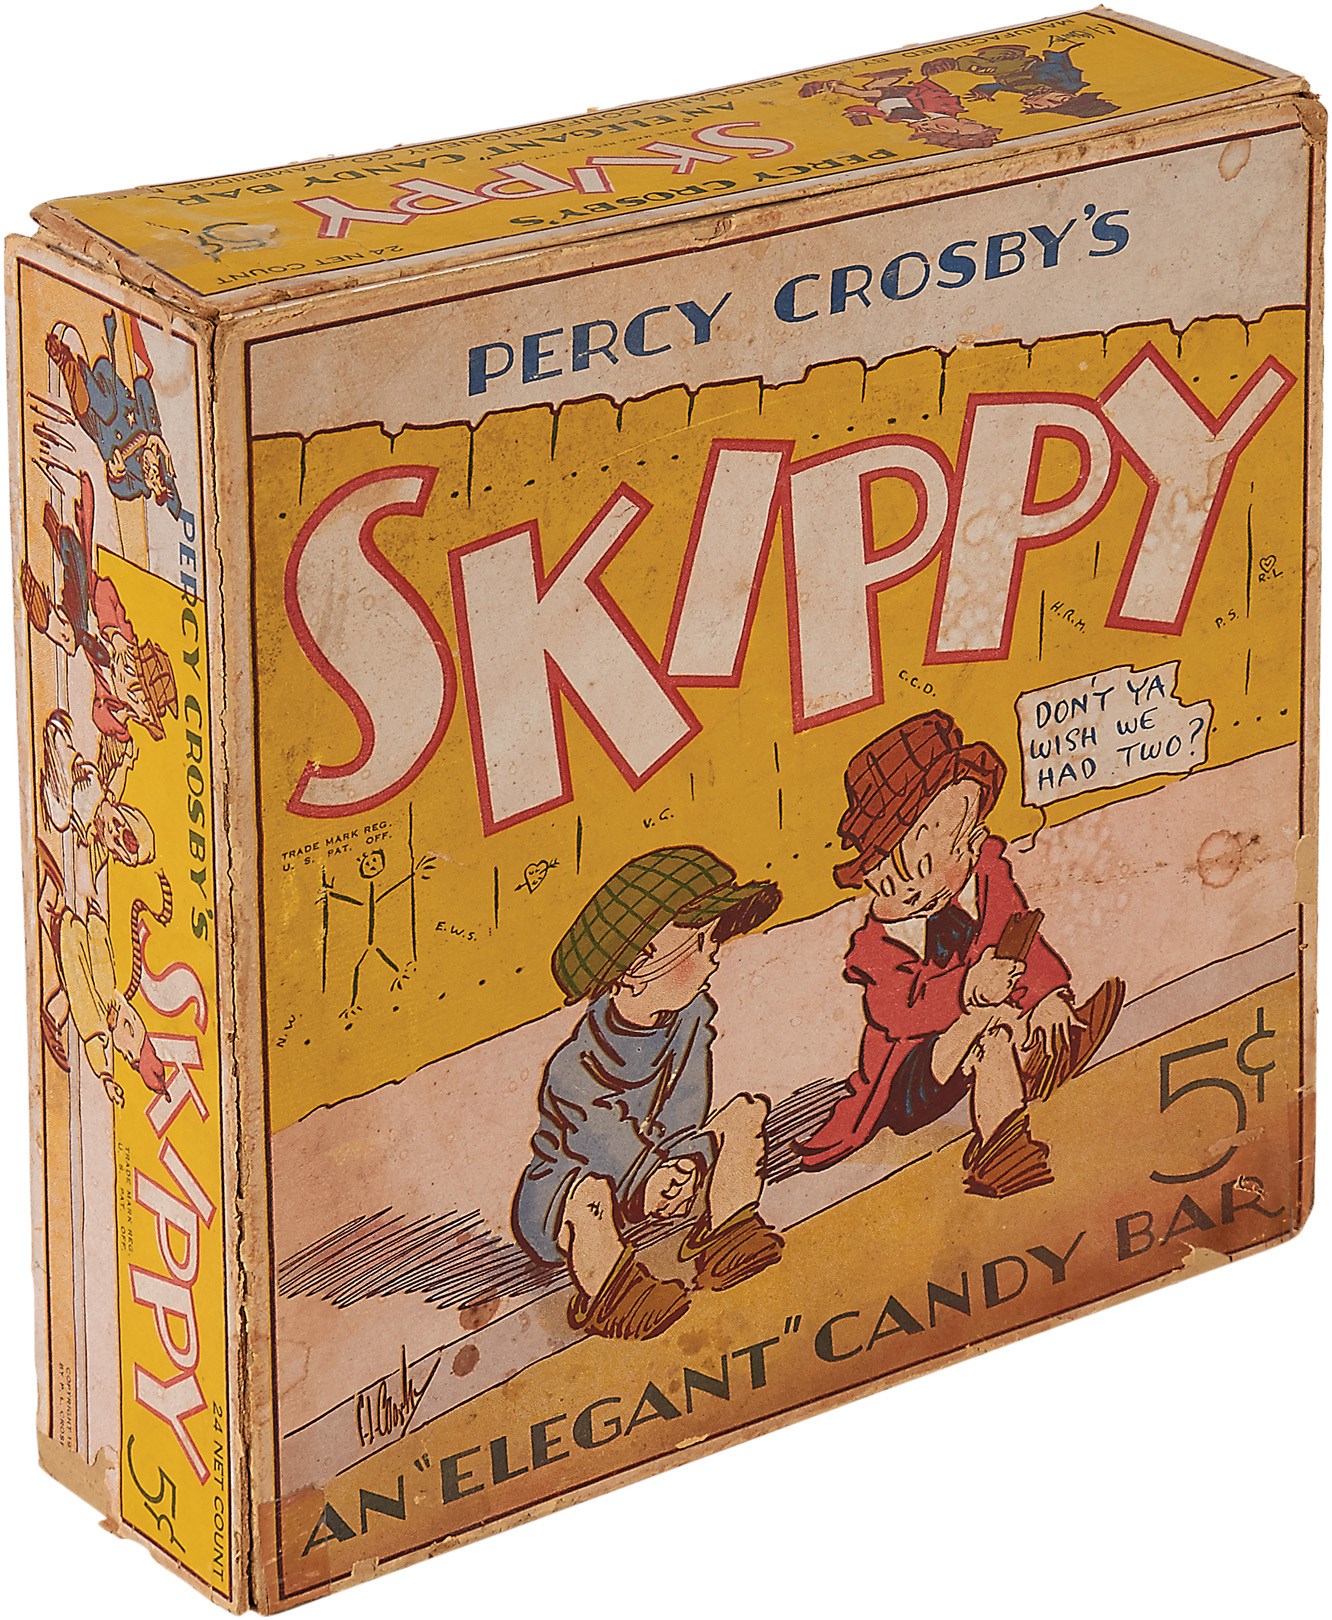 1931 Percy Crosby Skippy "Elegant Candy" Bar Display Box